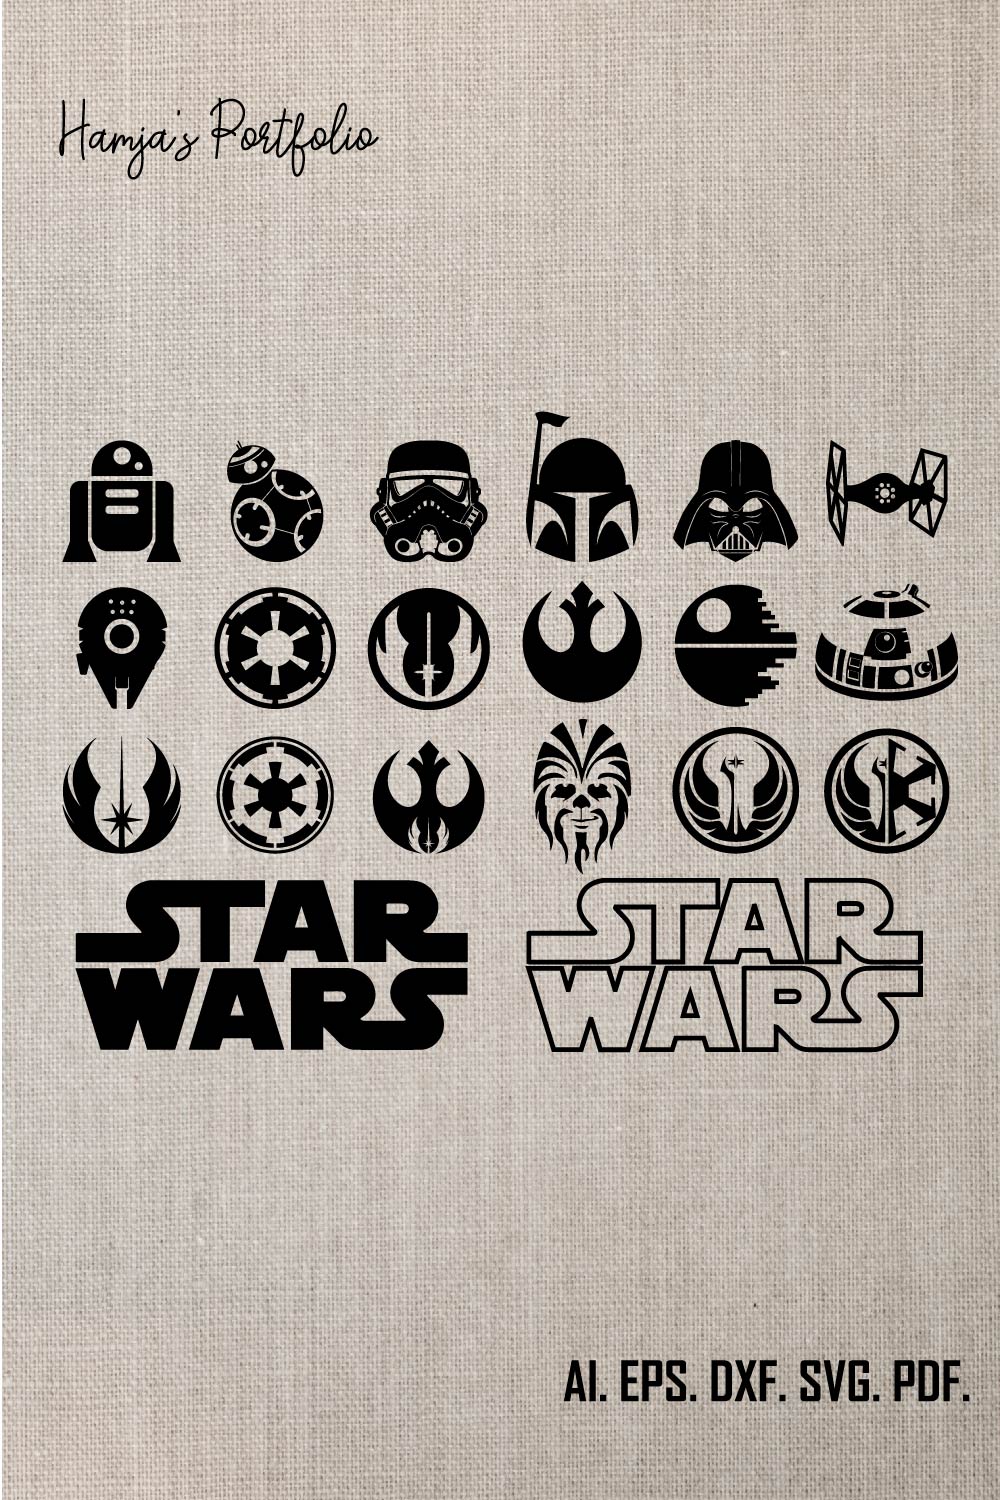 Star wars svg Bundle, Star Wars Squad Goal svg, Star Wars Clipart, Darth Vader svg , Yoda svg, logo ,dxf Instant Download pinterest preview image.